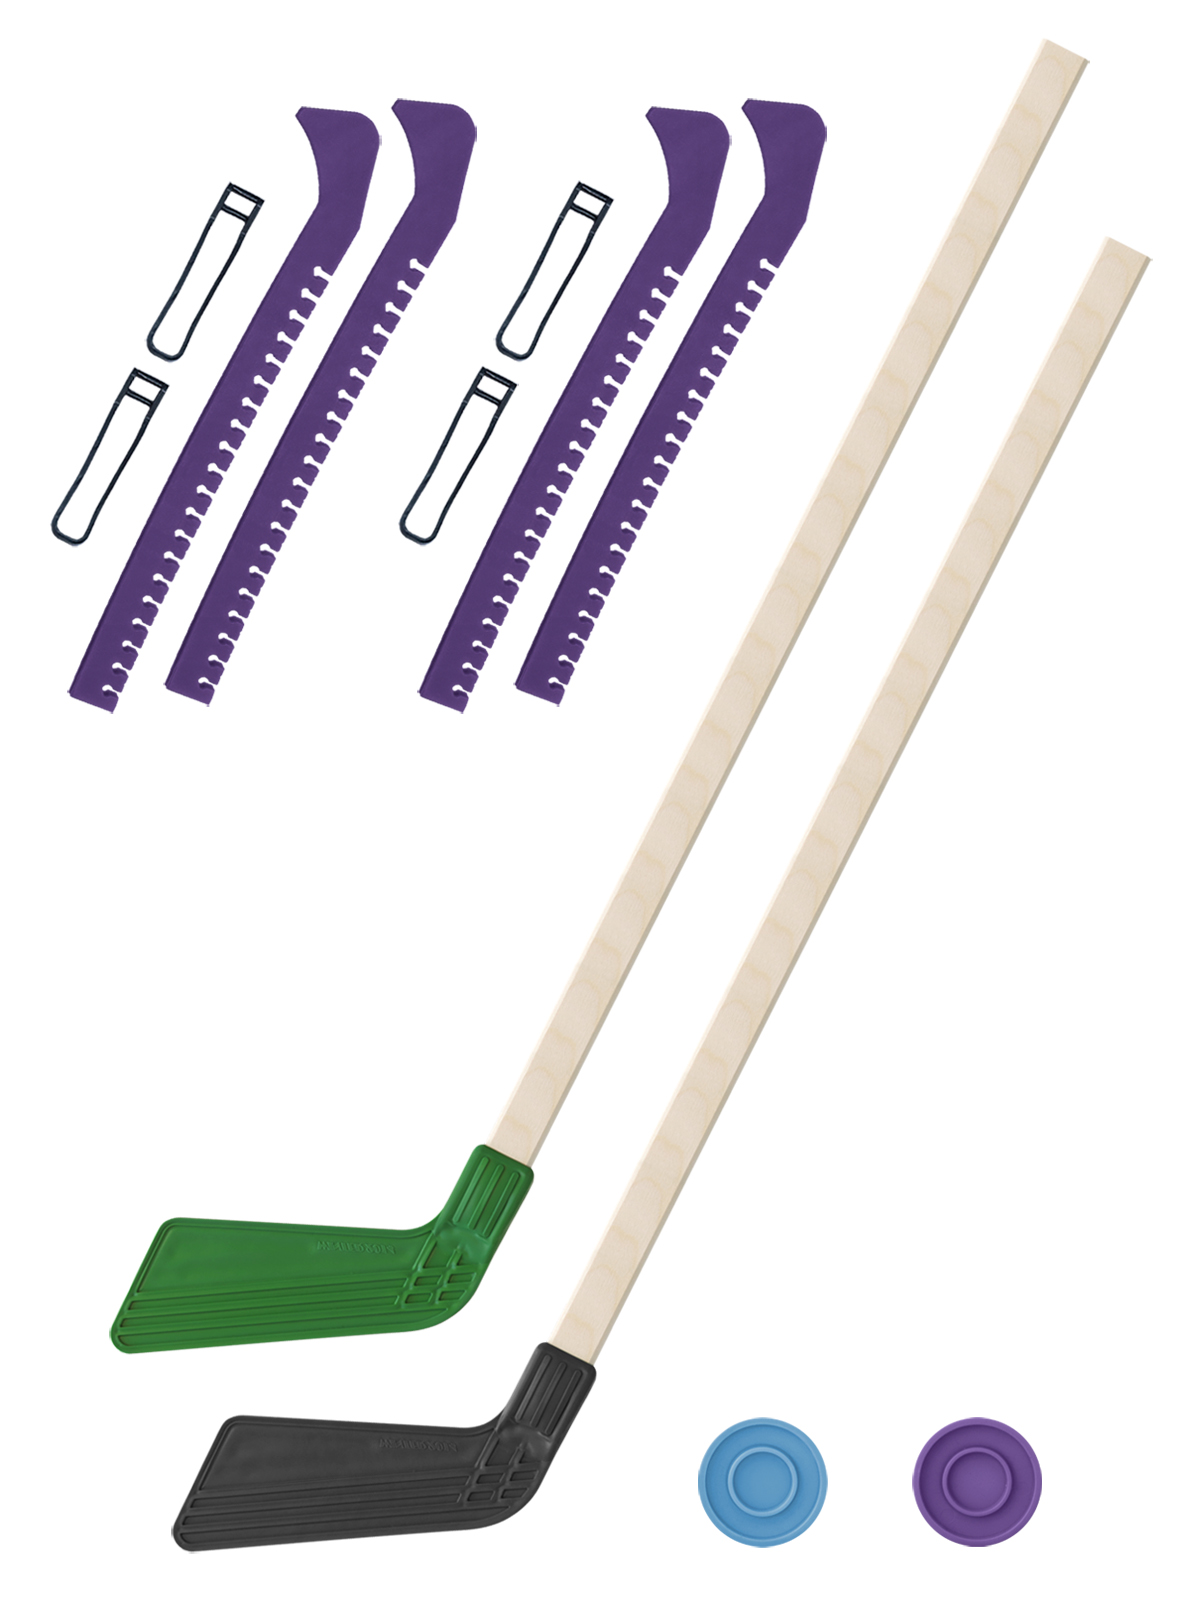 Хоккейный набор Задира-плюс клюшка детская(зел+чер)2шт+2 шайбы+чехлы для коньков фиол 2шт